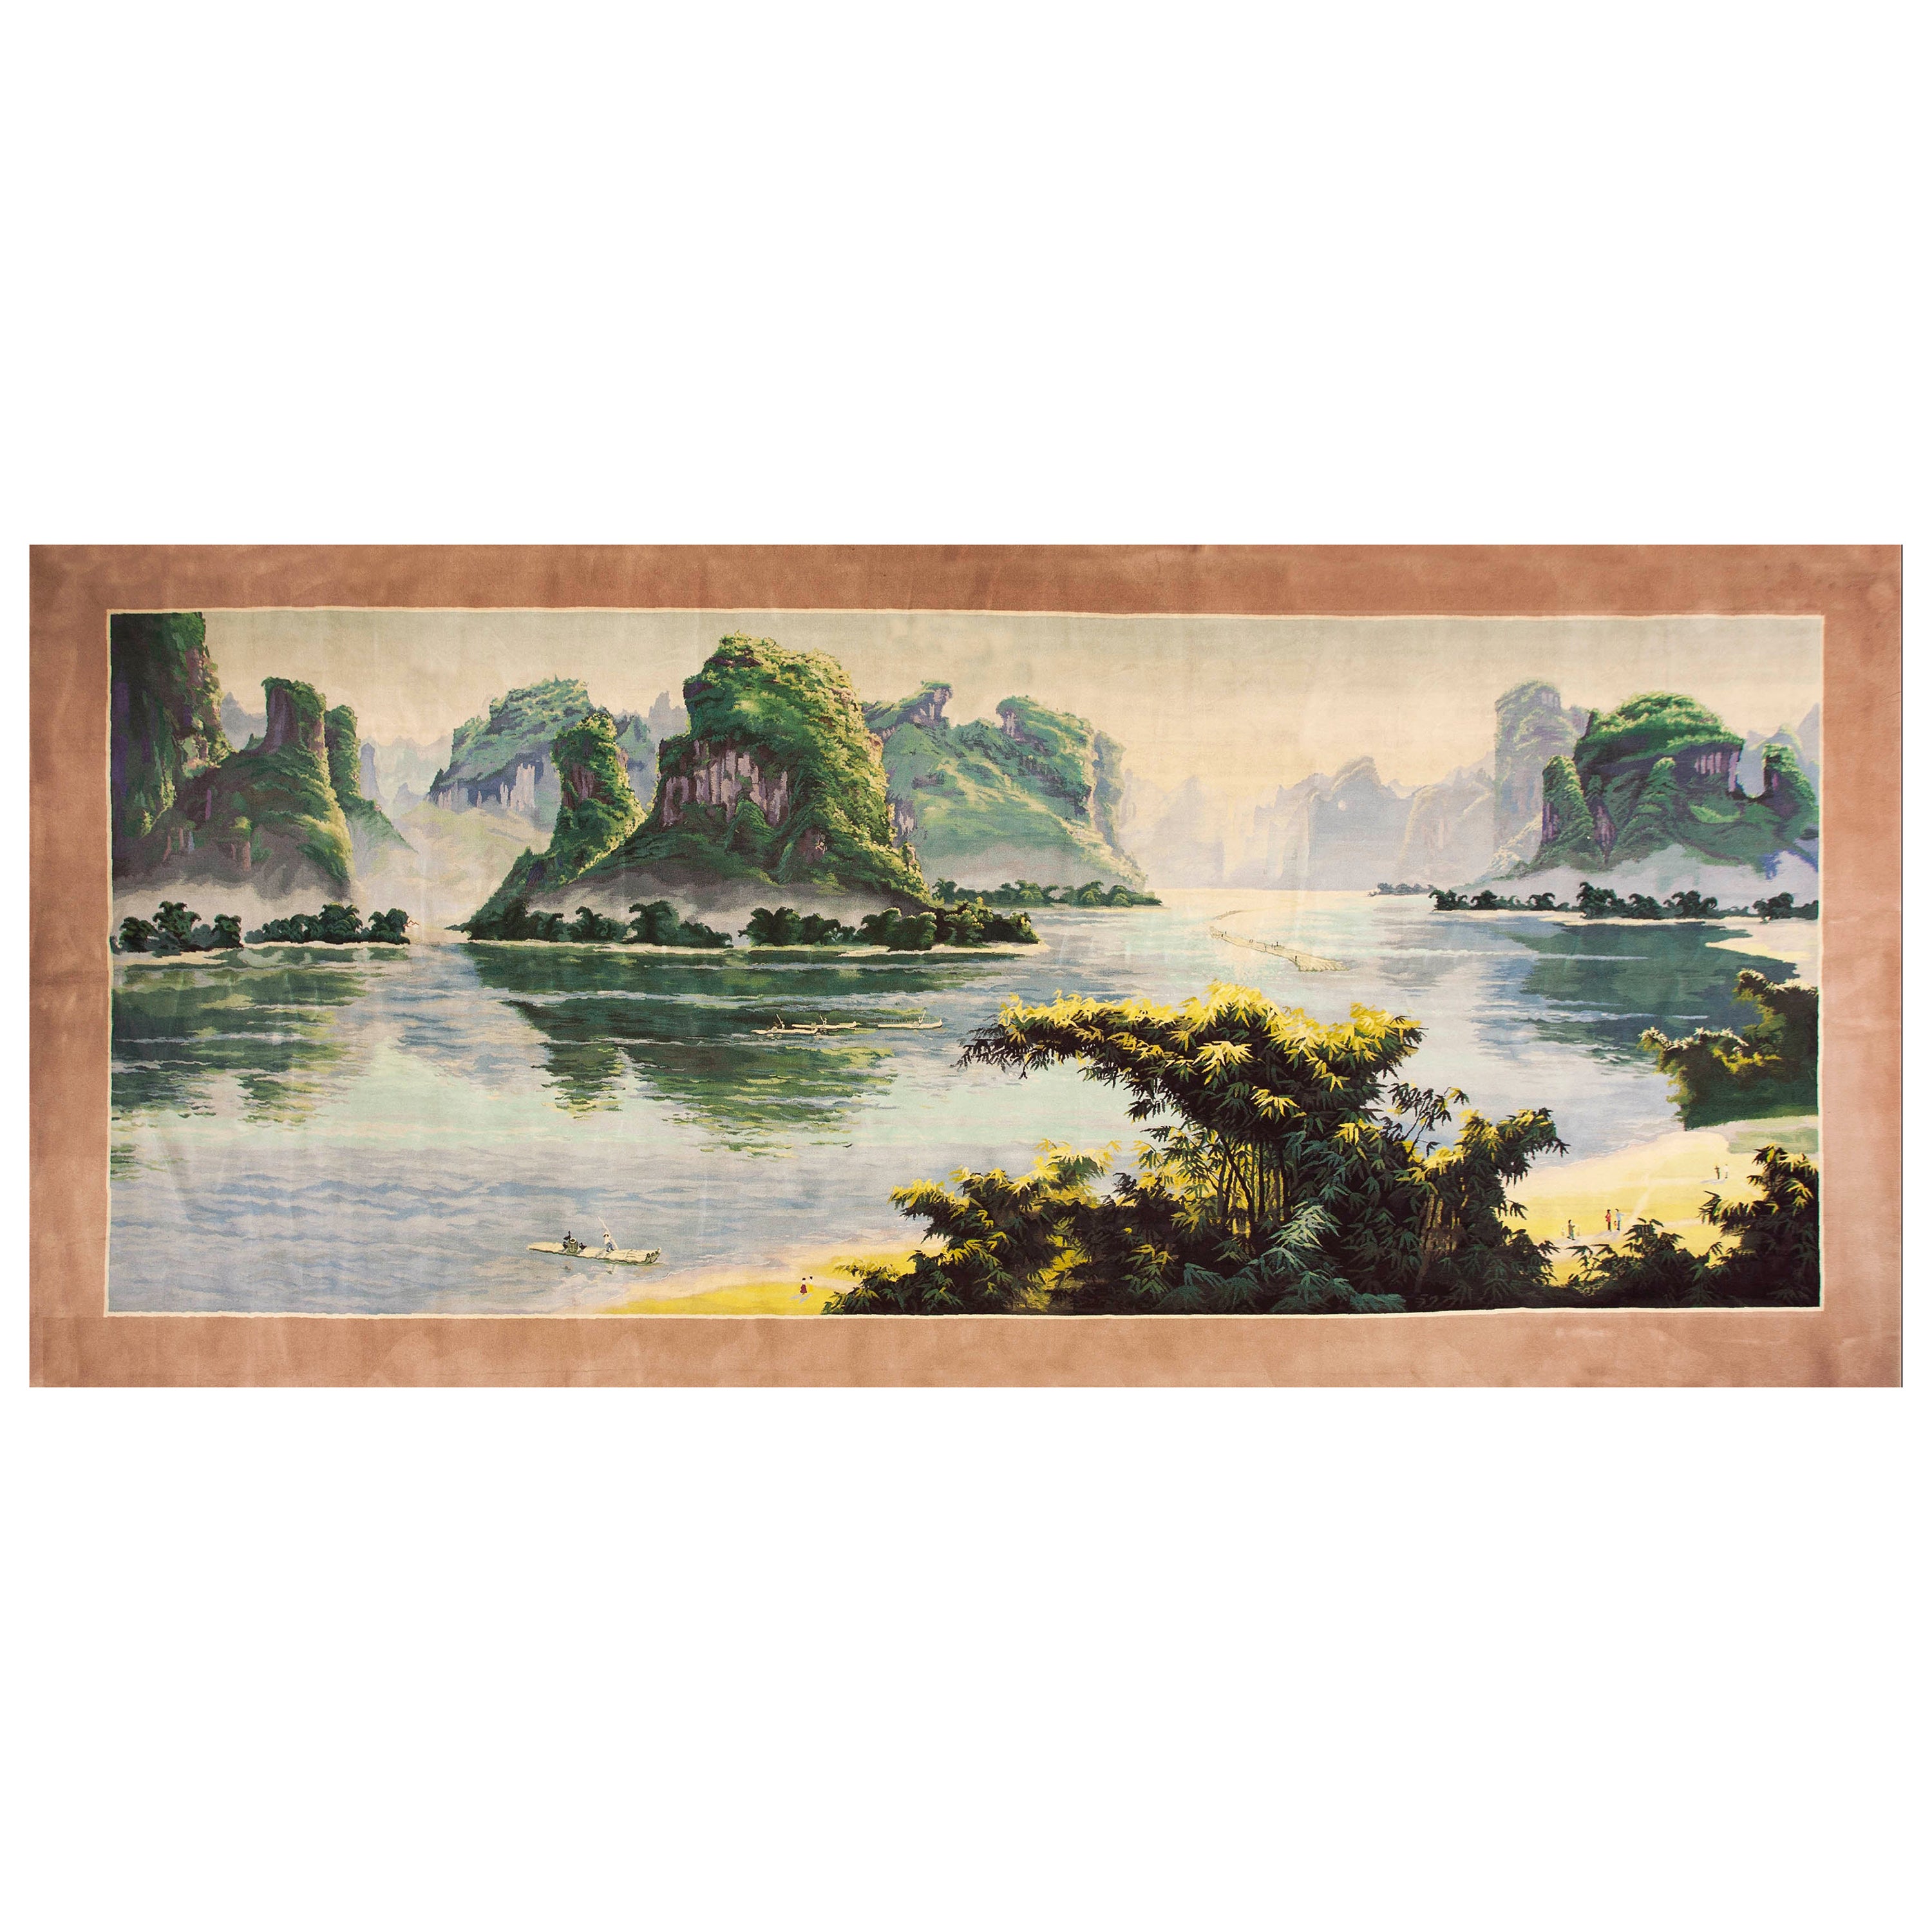 Chinesischer Scenic-Teppich im Vintage-Stil von 1980 ( 8'2" x 18'6" - 250 x 565")